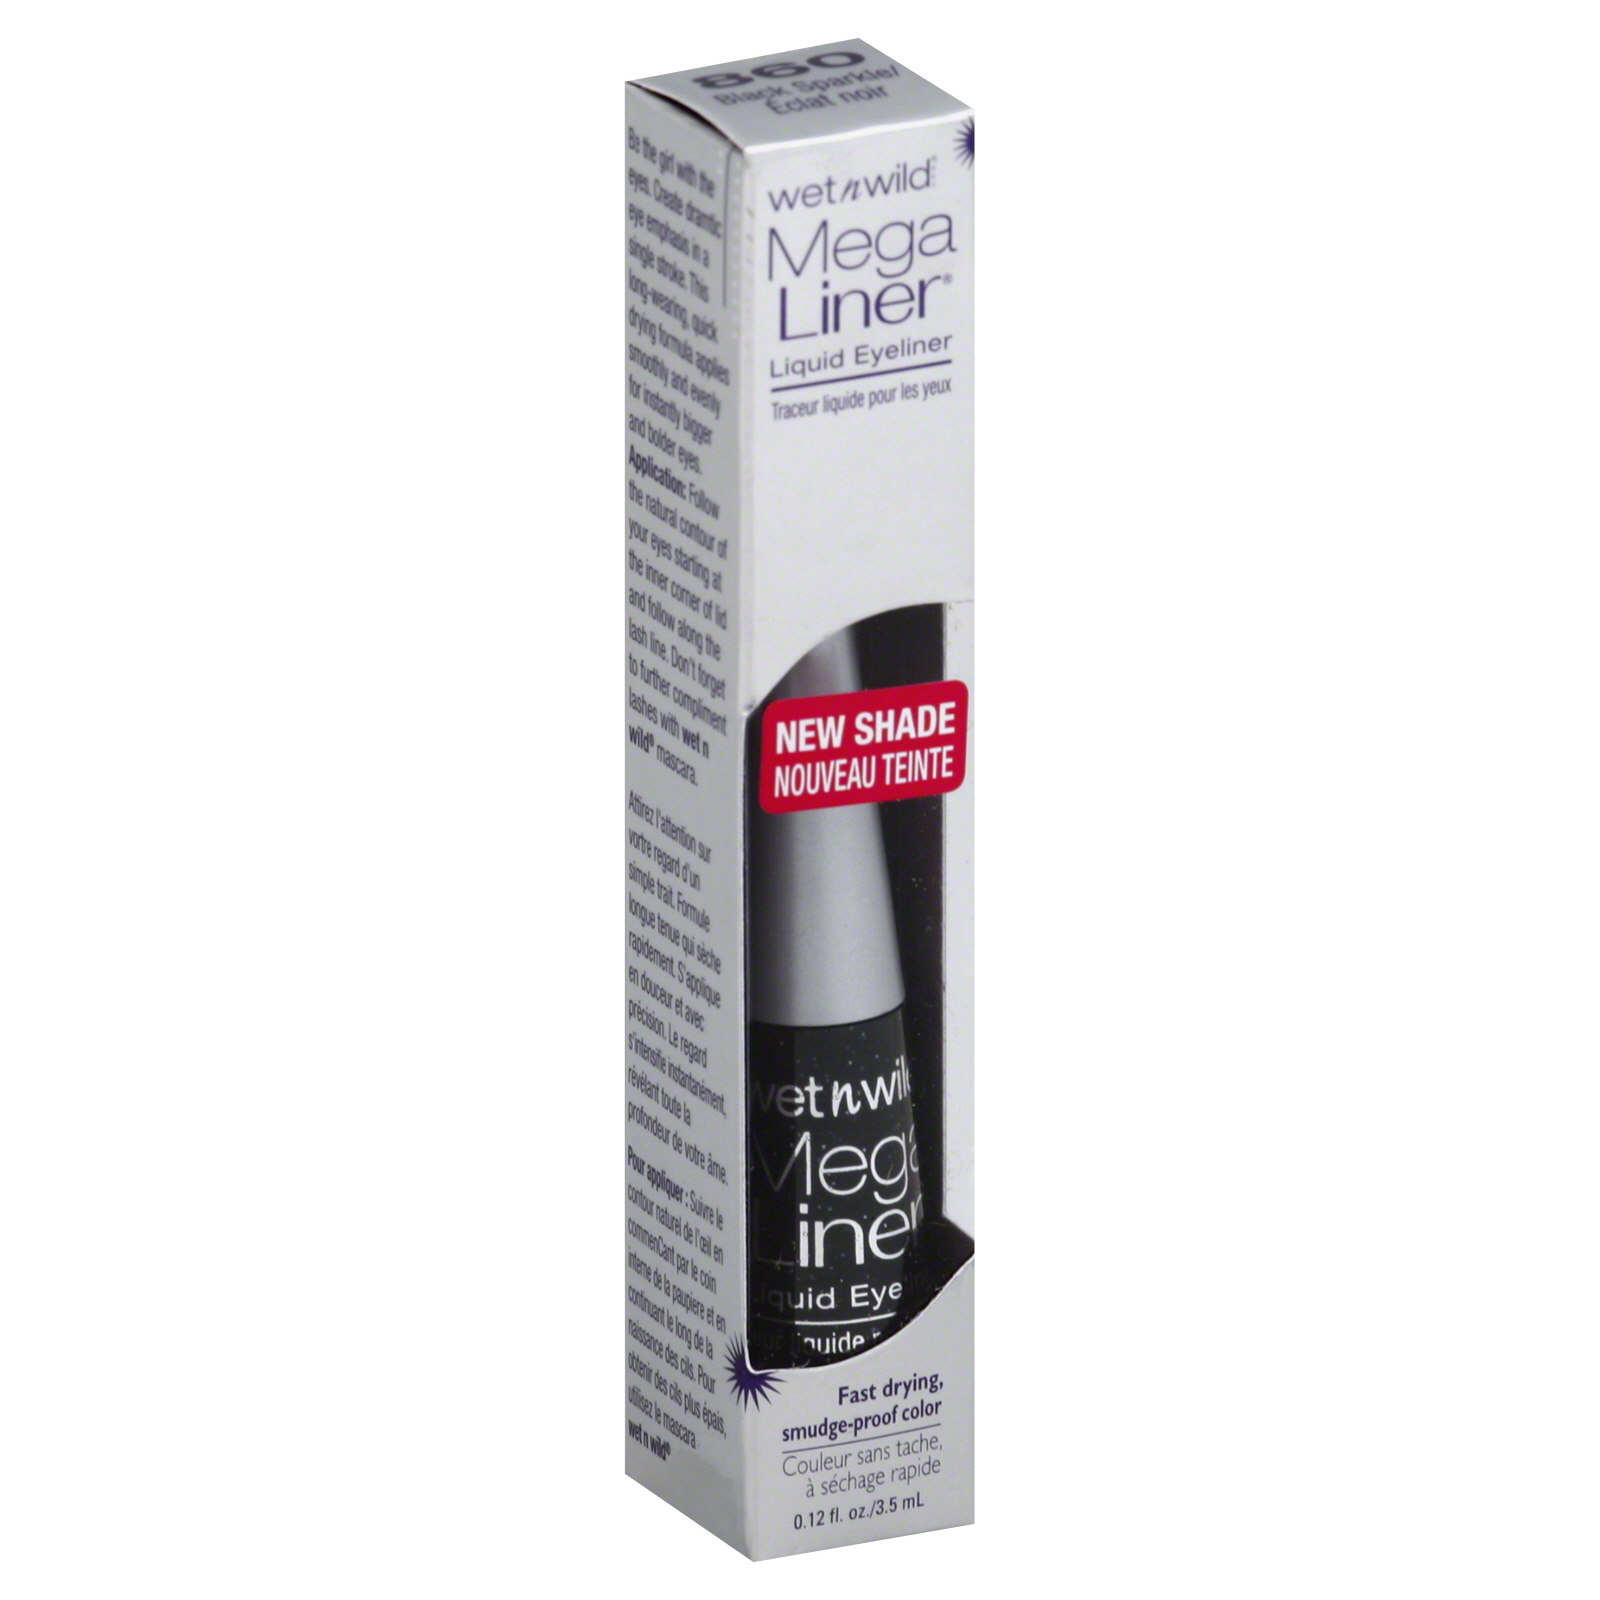 Wet n Wild Mega Liner Liquid Eyeliner Black Sparkle 0.12 fl oz